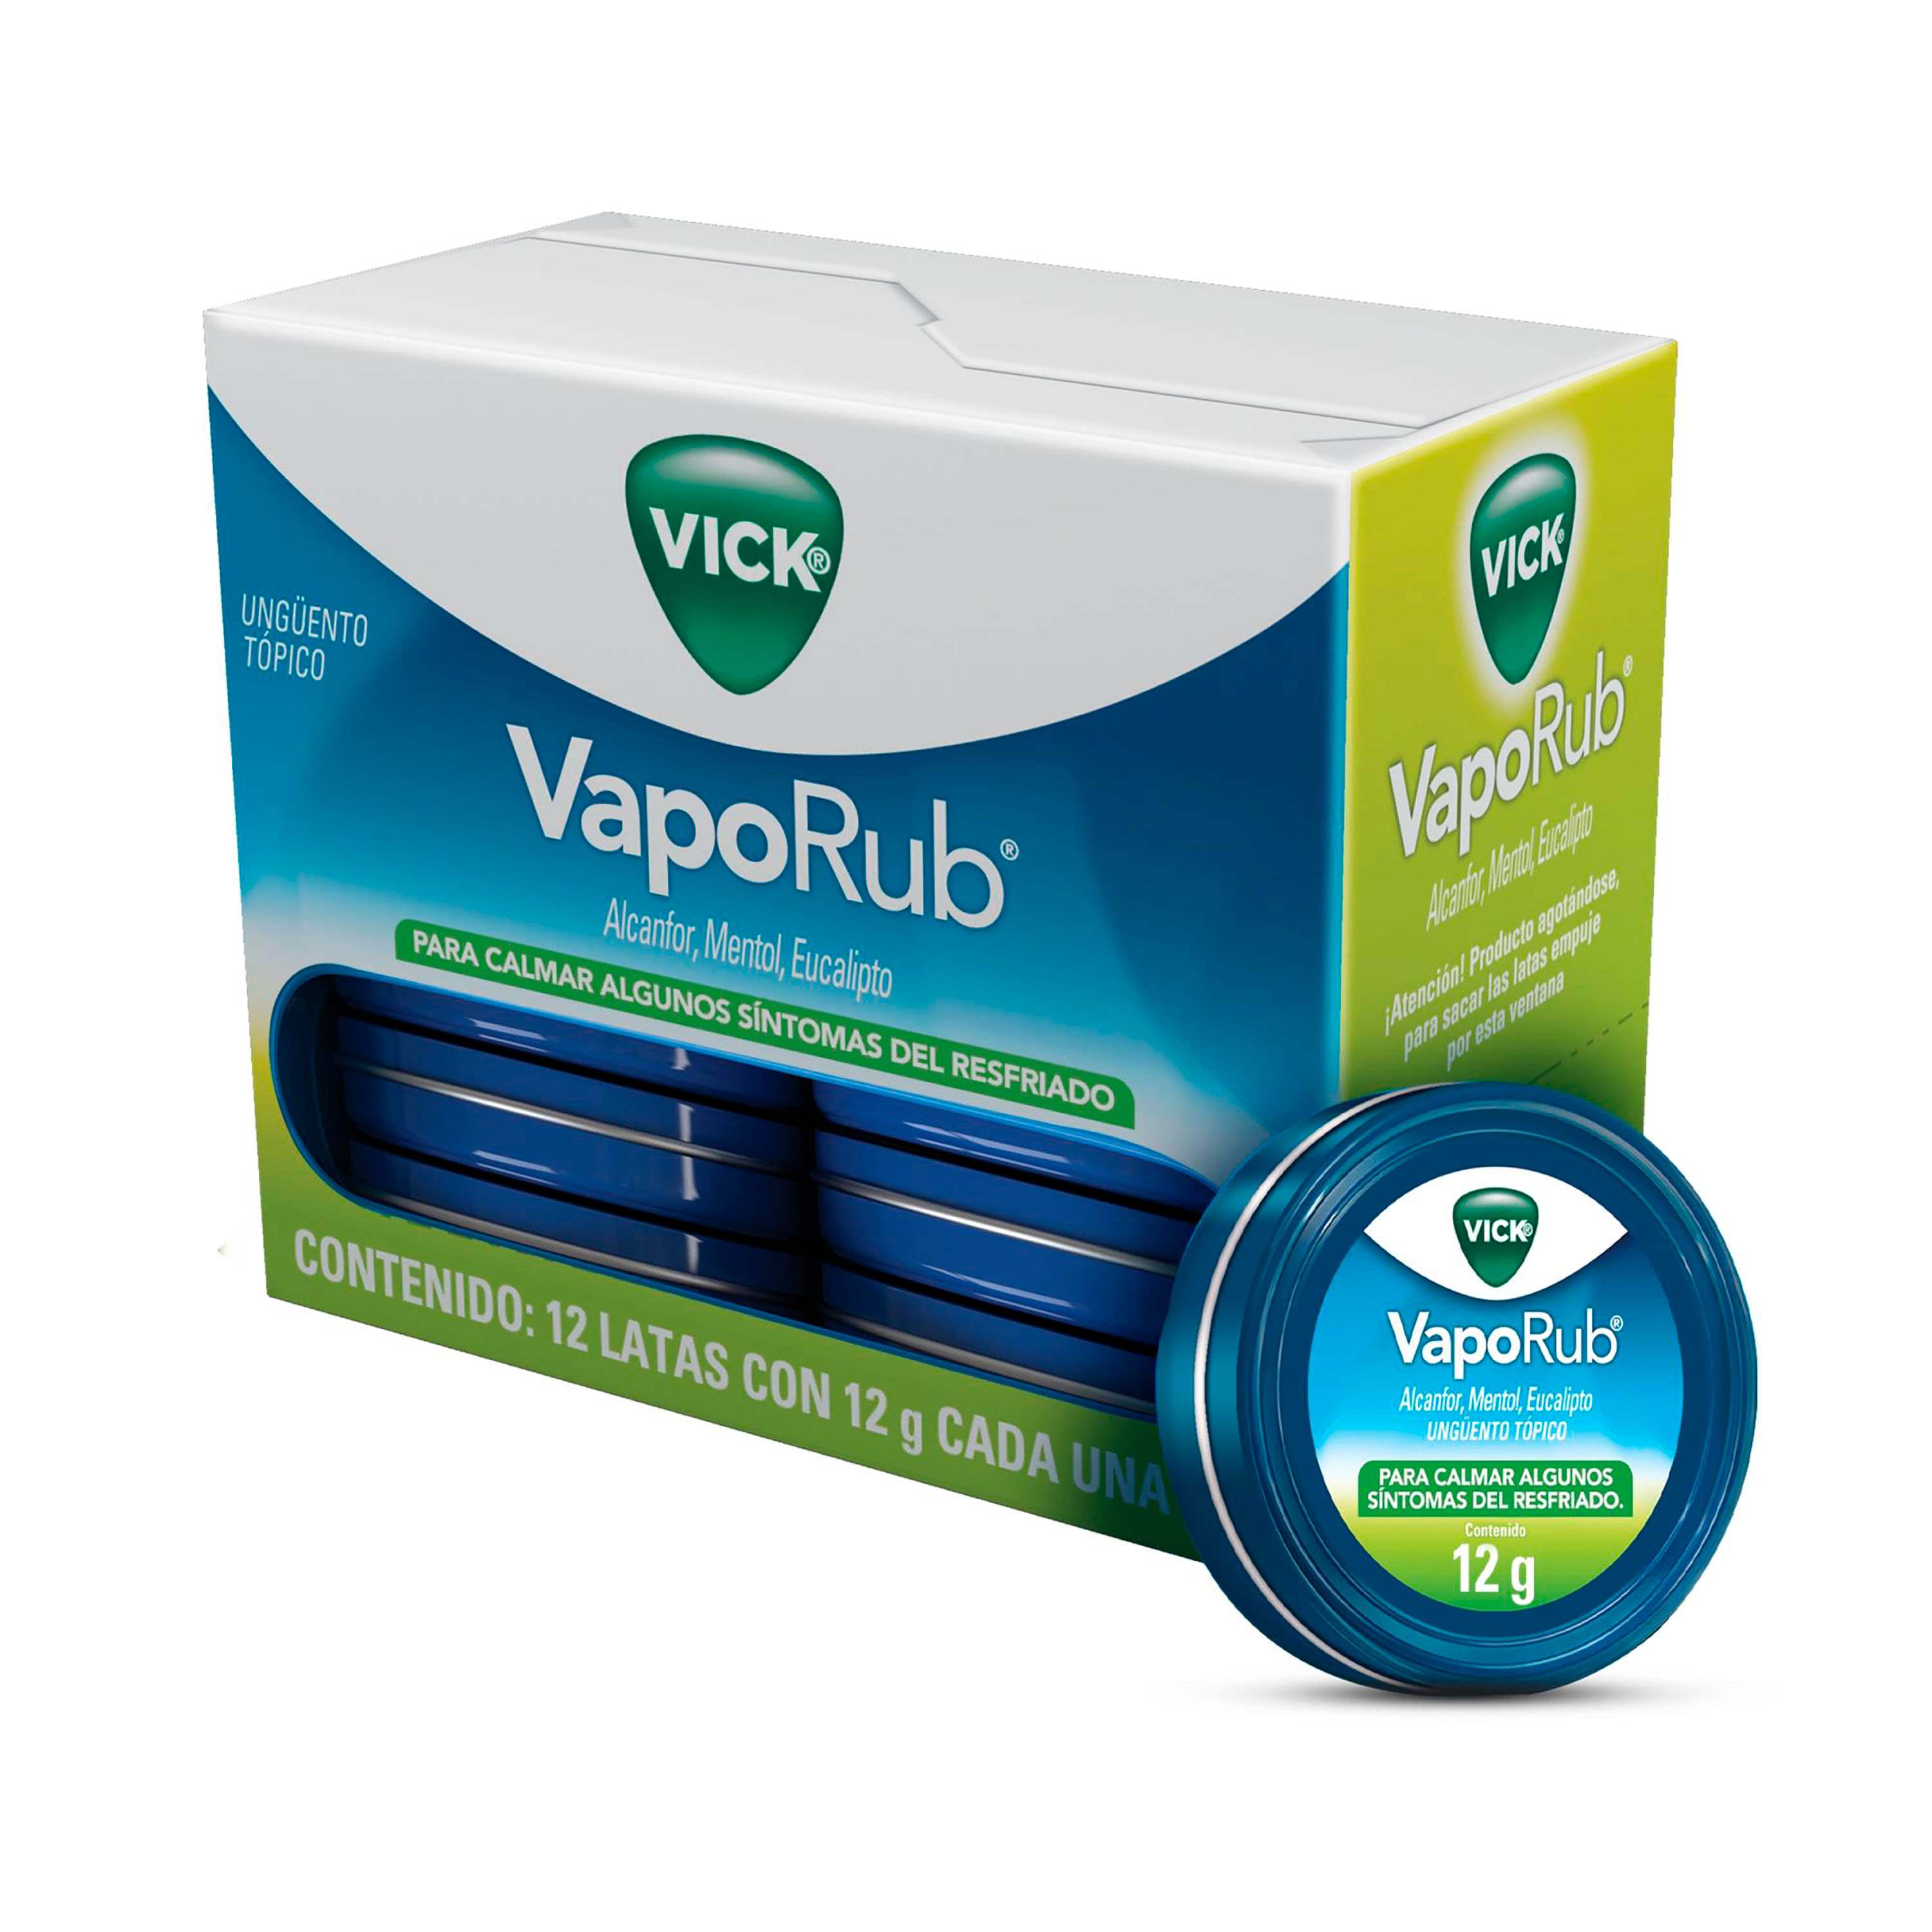 Vick - Pack Vaporub Inhalador, para Resfriado, con Aroma a Mentol,  Eucalipto y Alcanfor, 197 mg + Vitapyrena Antigripal, Té Sabor Manzanilla y  Limón-Tila, para Gripe, 5 Sobres de 5 g c/u (